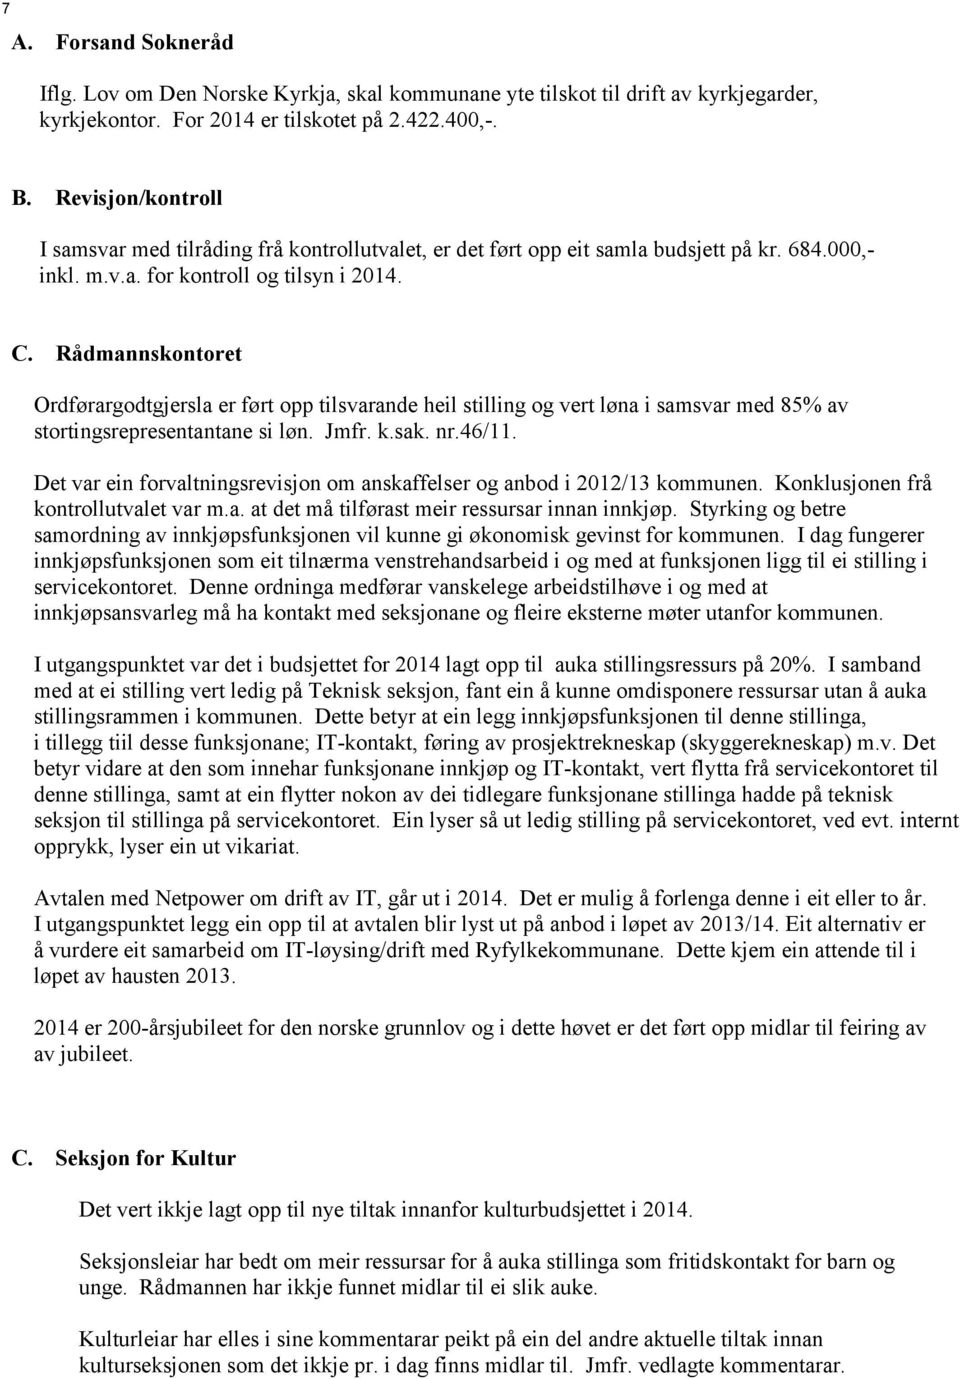 Rådmannskontoret Ordførargodtgjersla er ført opp tilsvarande heil stilling og vert løna i samsvar med 85% av stortingsrepresentantane si løn. Jmfr. k.sak. nr.46/11.